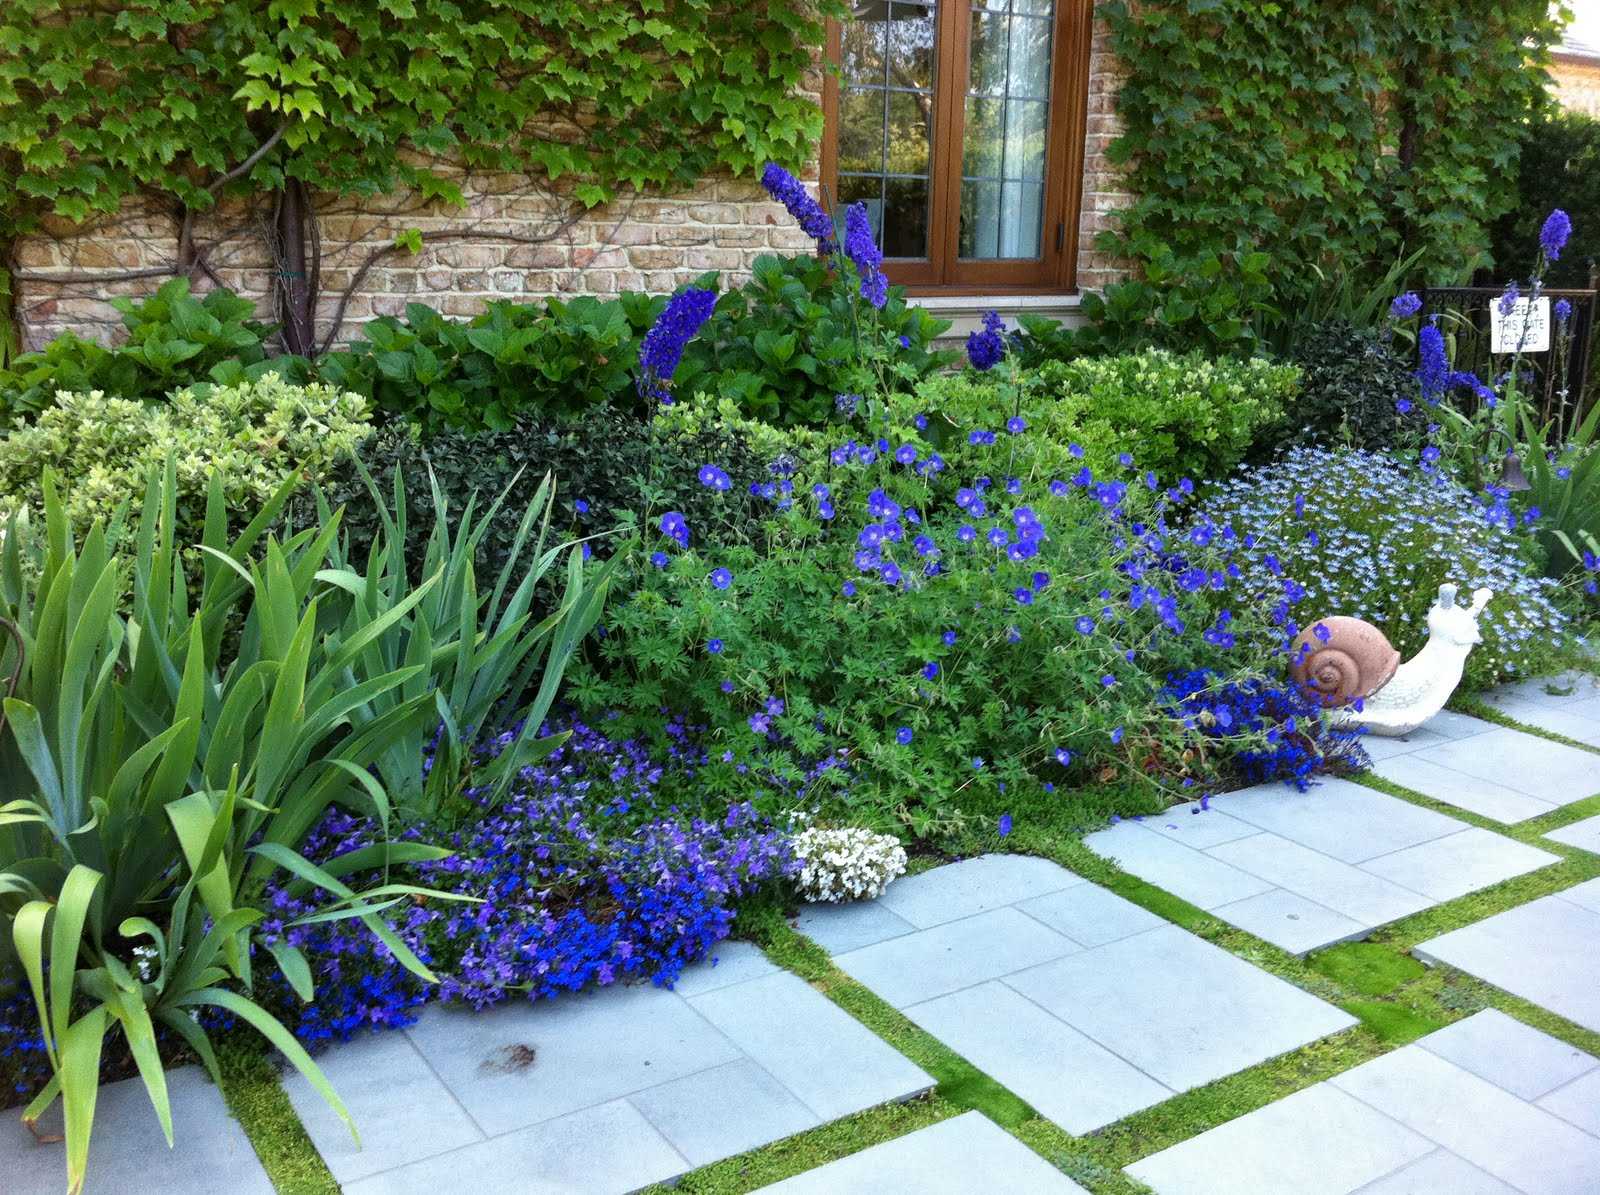 Ландшафтный дизайн с лобелиями  фото цветов на клумбе в саду Особенности использования растения в сочетании с другими цветущими культурами, примеры хороших соседей и красивых сочетаний